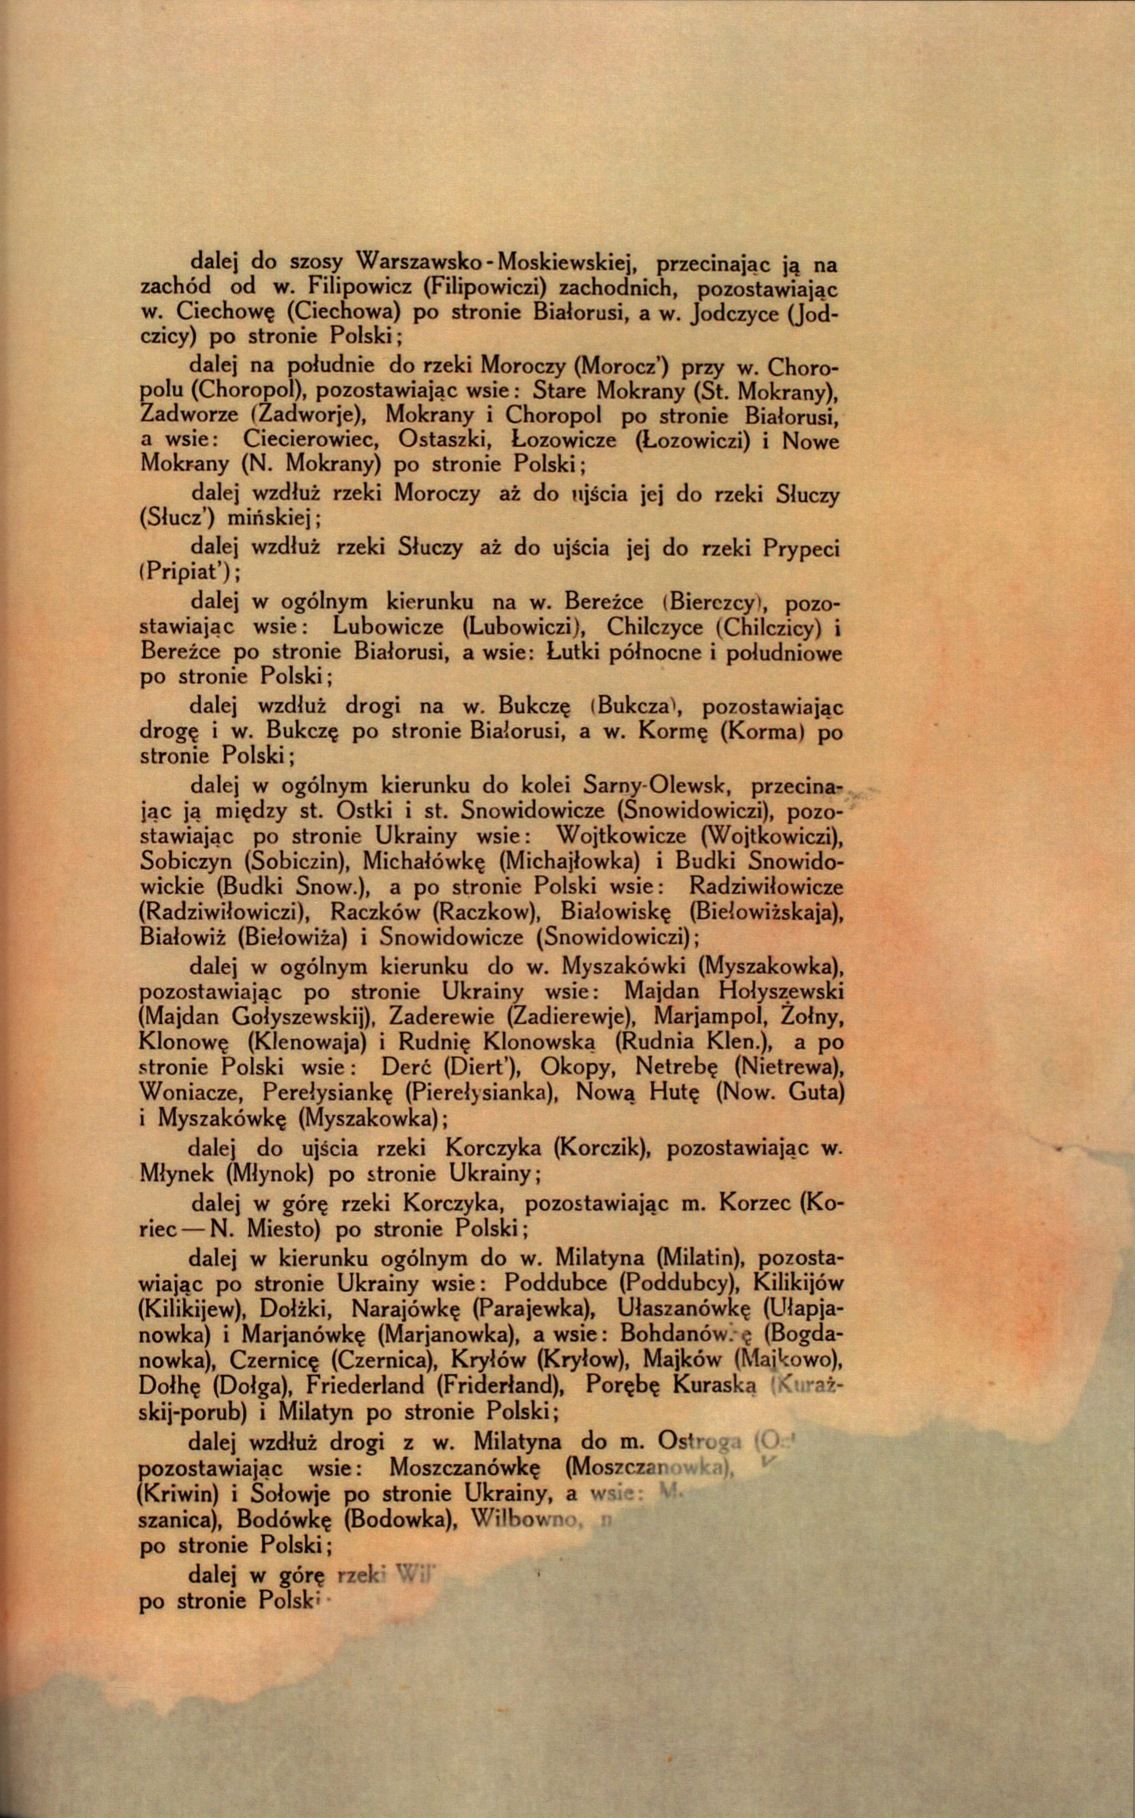 Traktat Pokoju między Polską a Rosją i Ukrainą podpisany w Rydze dnia 18 marca 1921 roku, s. 5, MSZ, sygn. 6739.